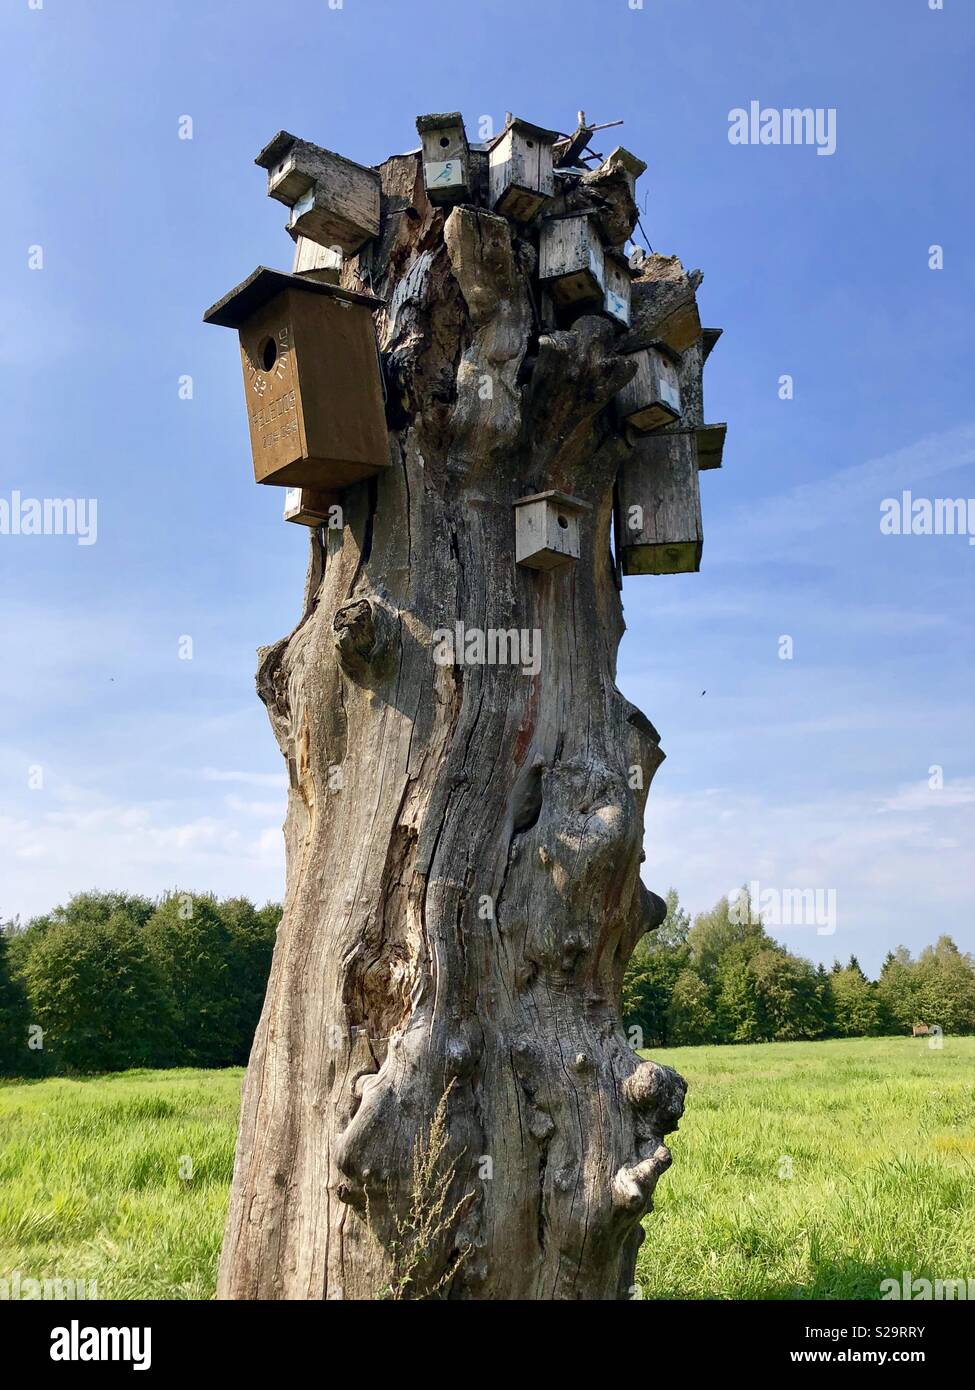 Riesige Baum stinken mit vielen Vogelarten beherbergt. Plateliai, Litauen. Stockfoto